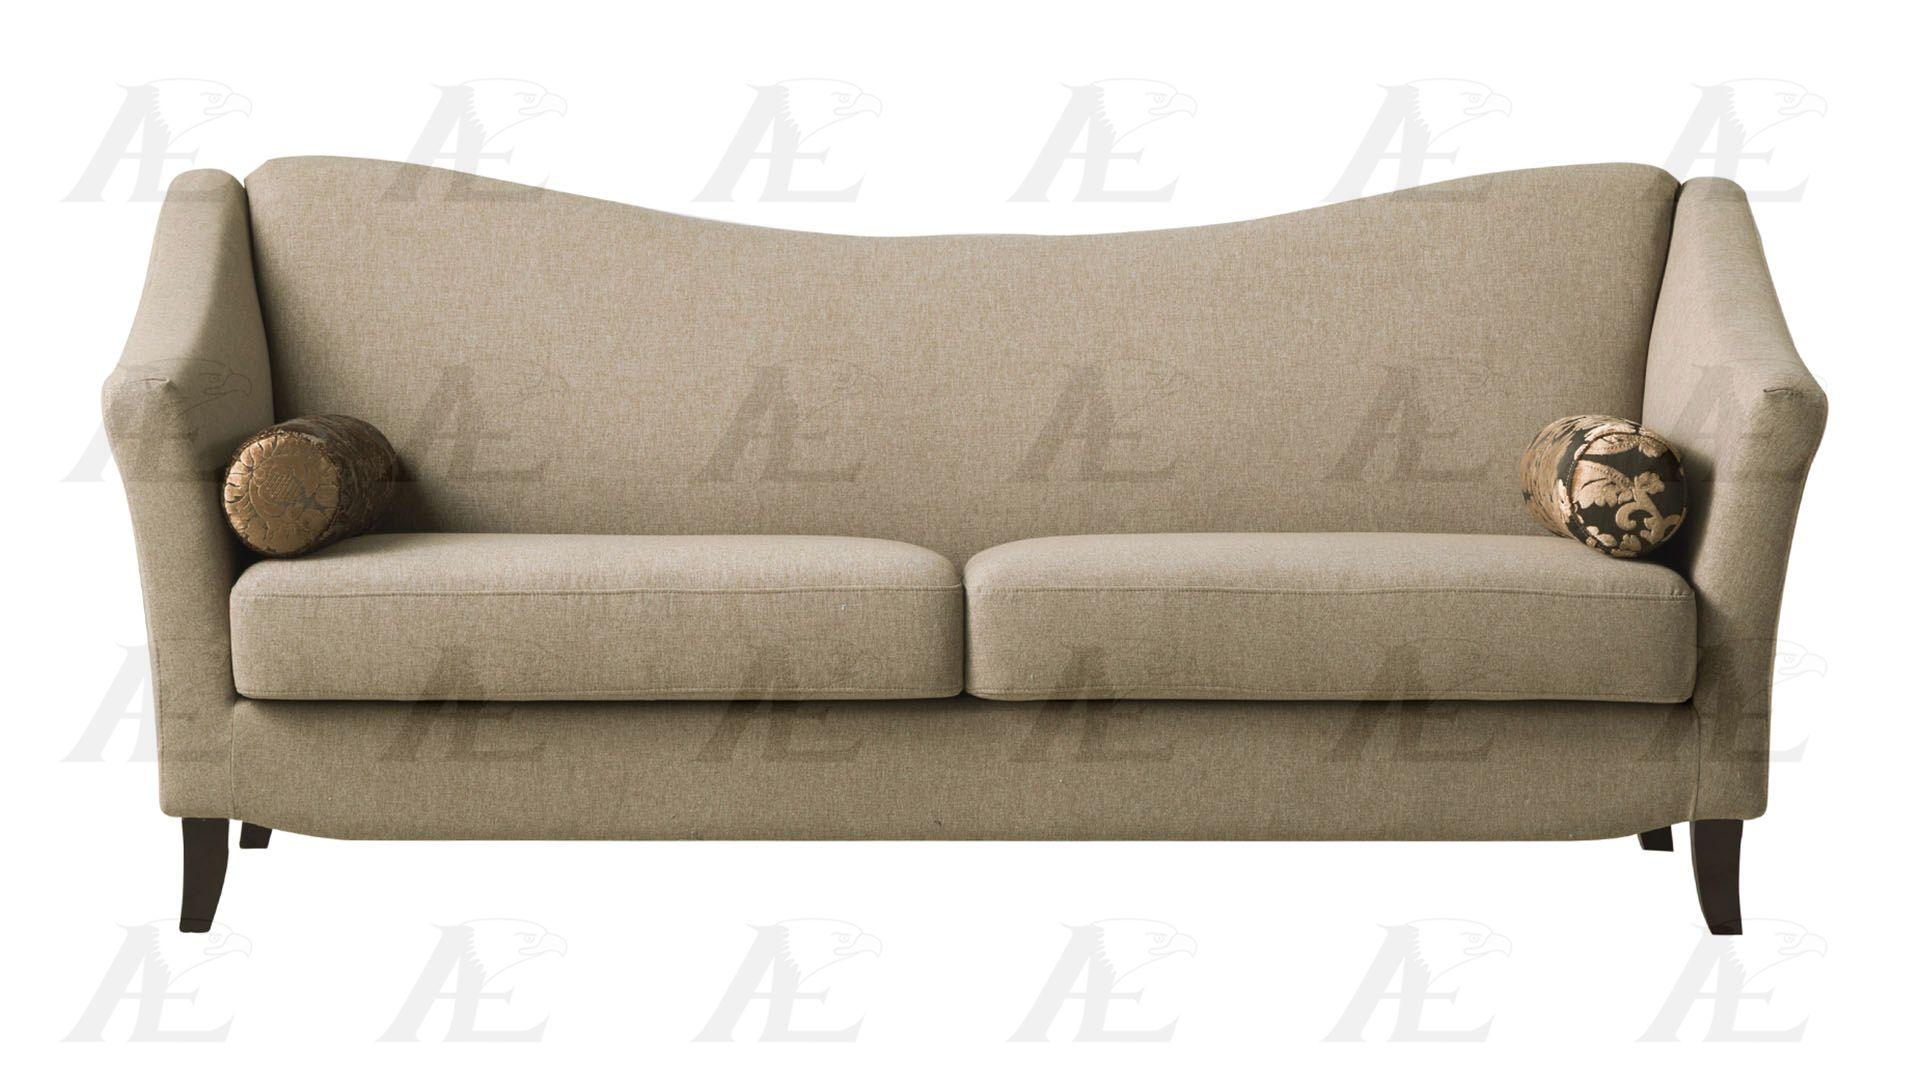 

    
American Eagle Furniture AE2371 Tan Fabric Tufted Sofa  Contemporary Style
